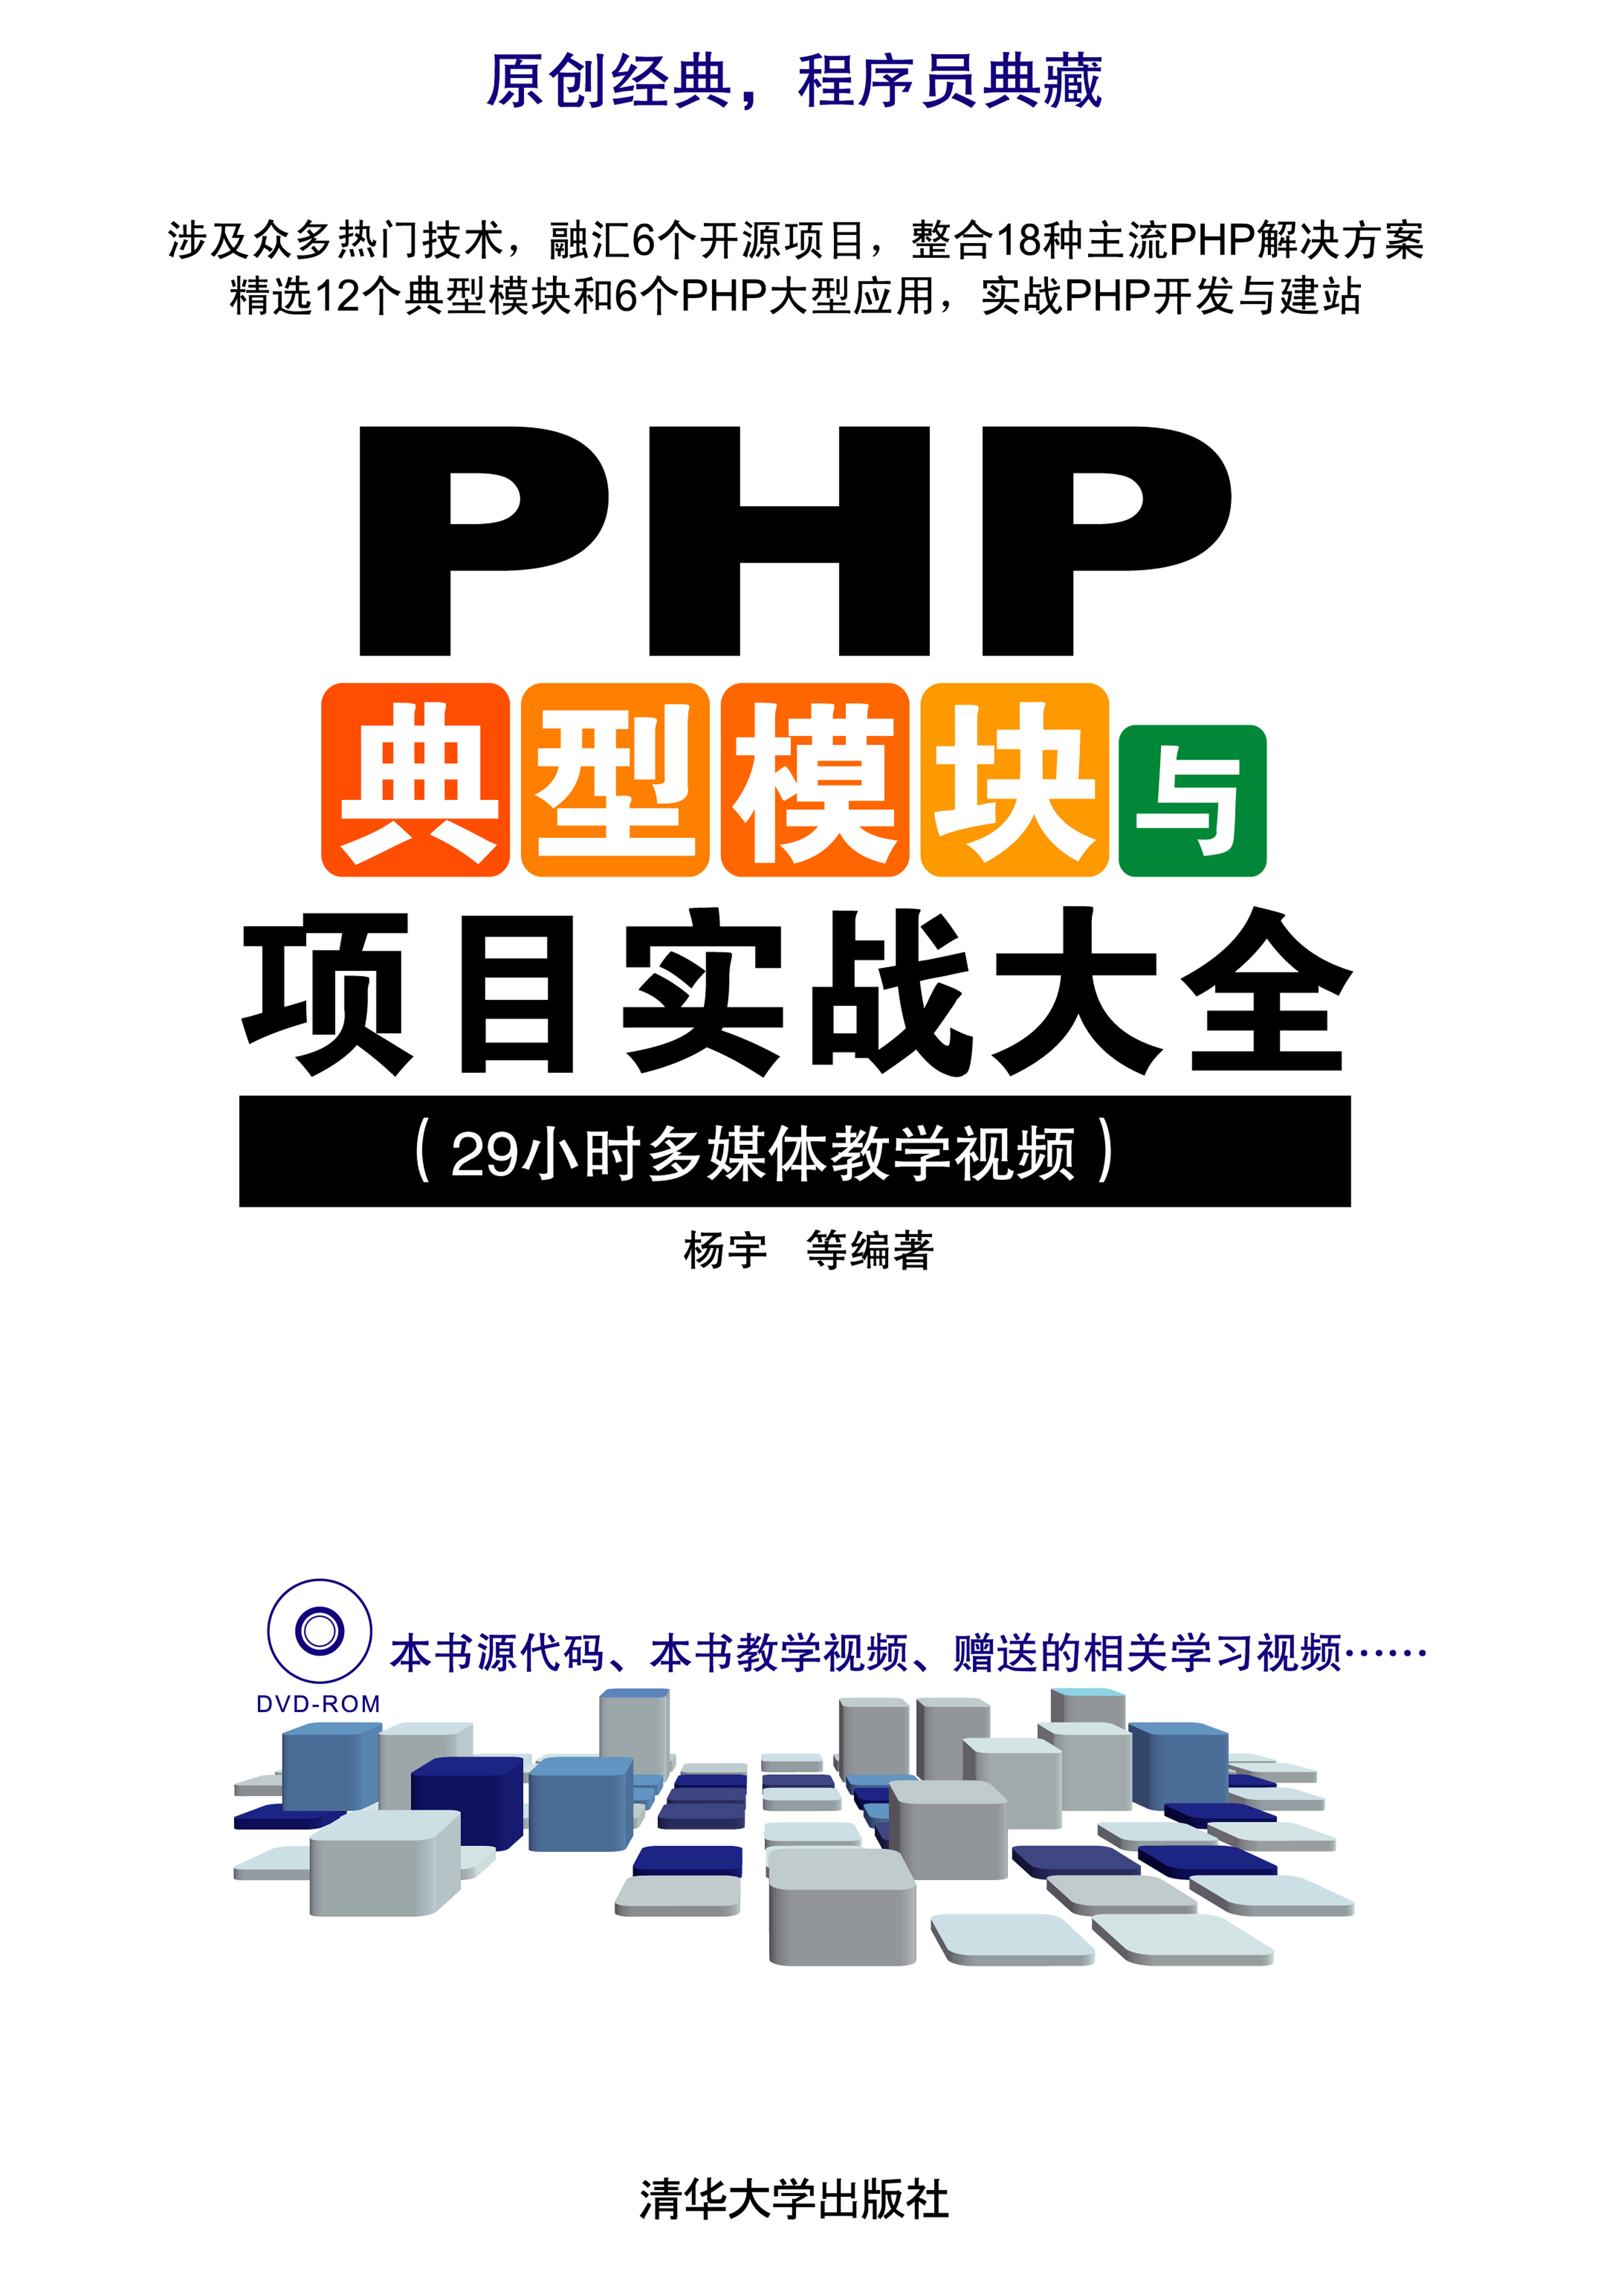 清华大学出版-PHP典型模块与项目实战大全_PHP教程插图源码资源库